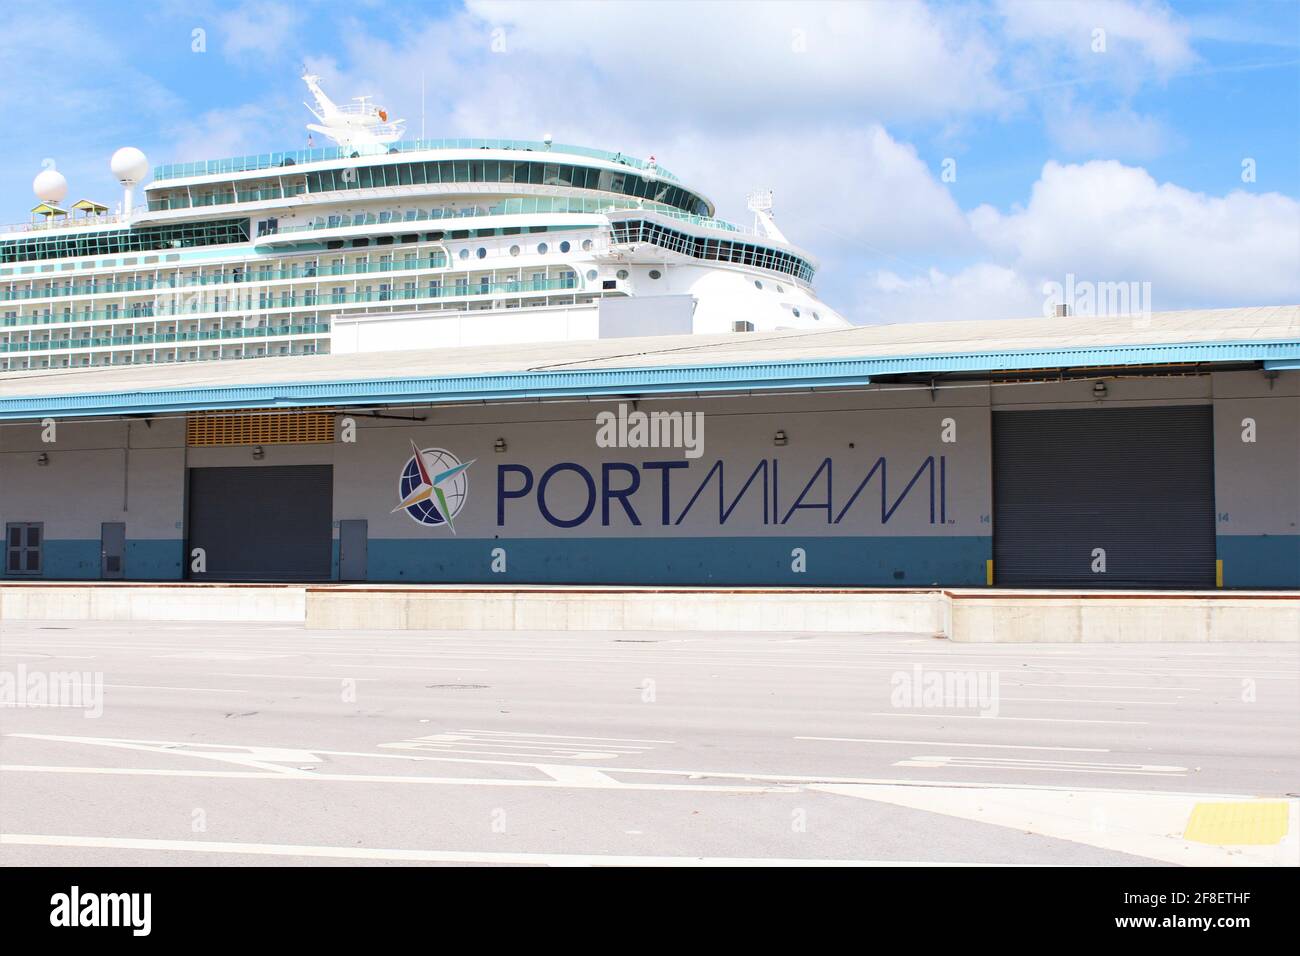 Panneau du port de Miami sur un bâtiment où un grand navire de croisière est stationné derrière. Les croisières n'ont pas été en activité depuis la pandémie COVID-19. Banque D'Images